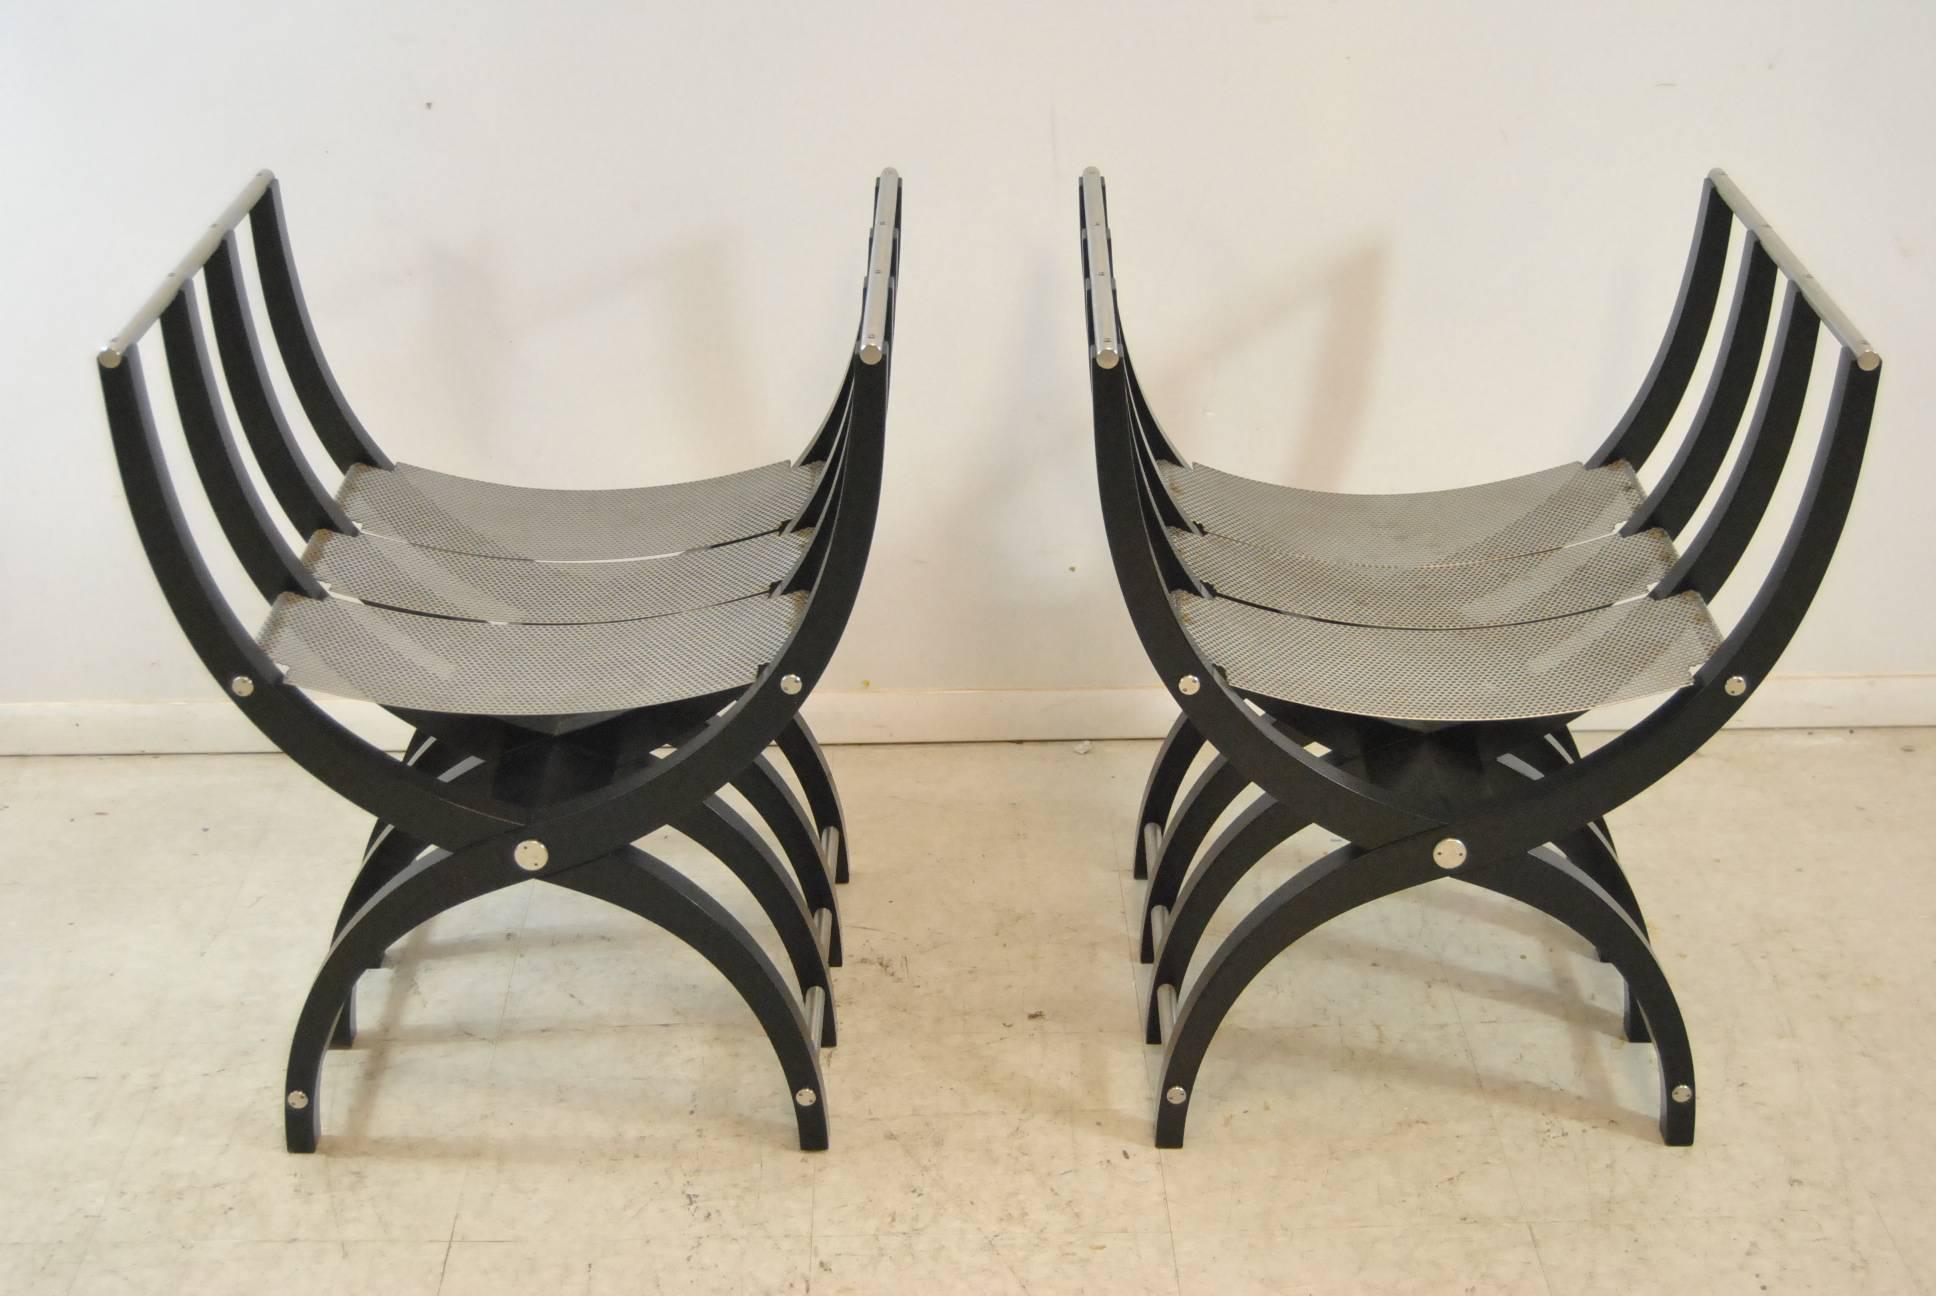 Une incroyable paire de chaises Savonarola. Ces chaises inhabituelles présentent une finition laquée noire avec un cadre en acier percé. Ces chaises uniques feront sensation dans n'importe quelle maison. Très bon état. Dimensions : 20